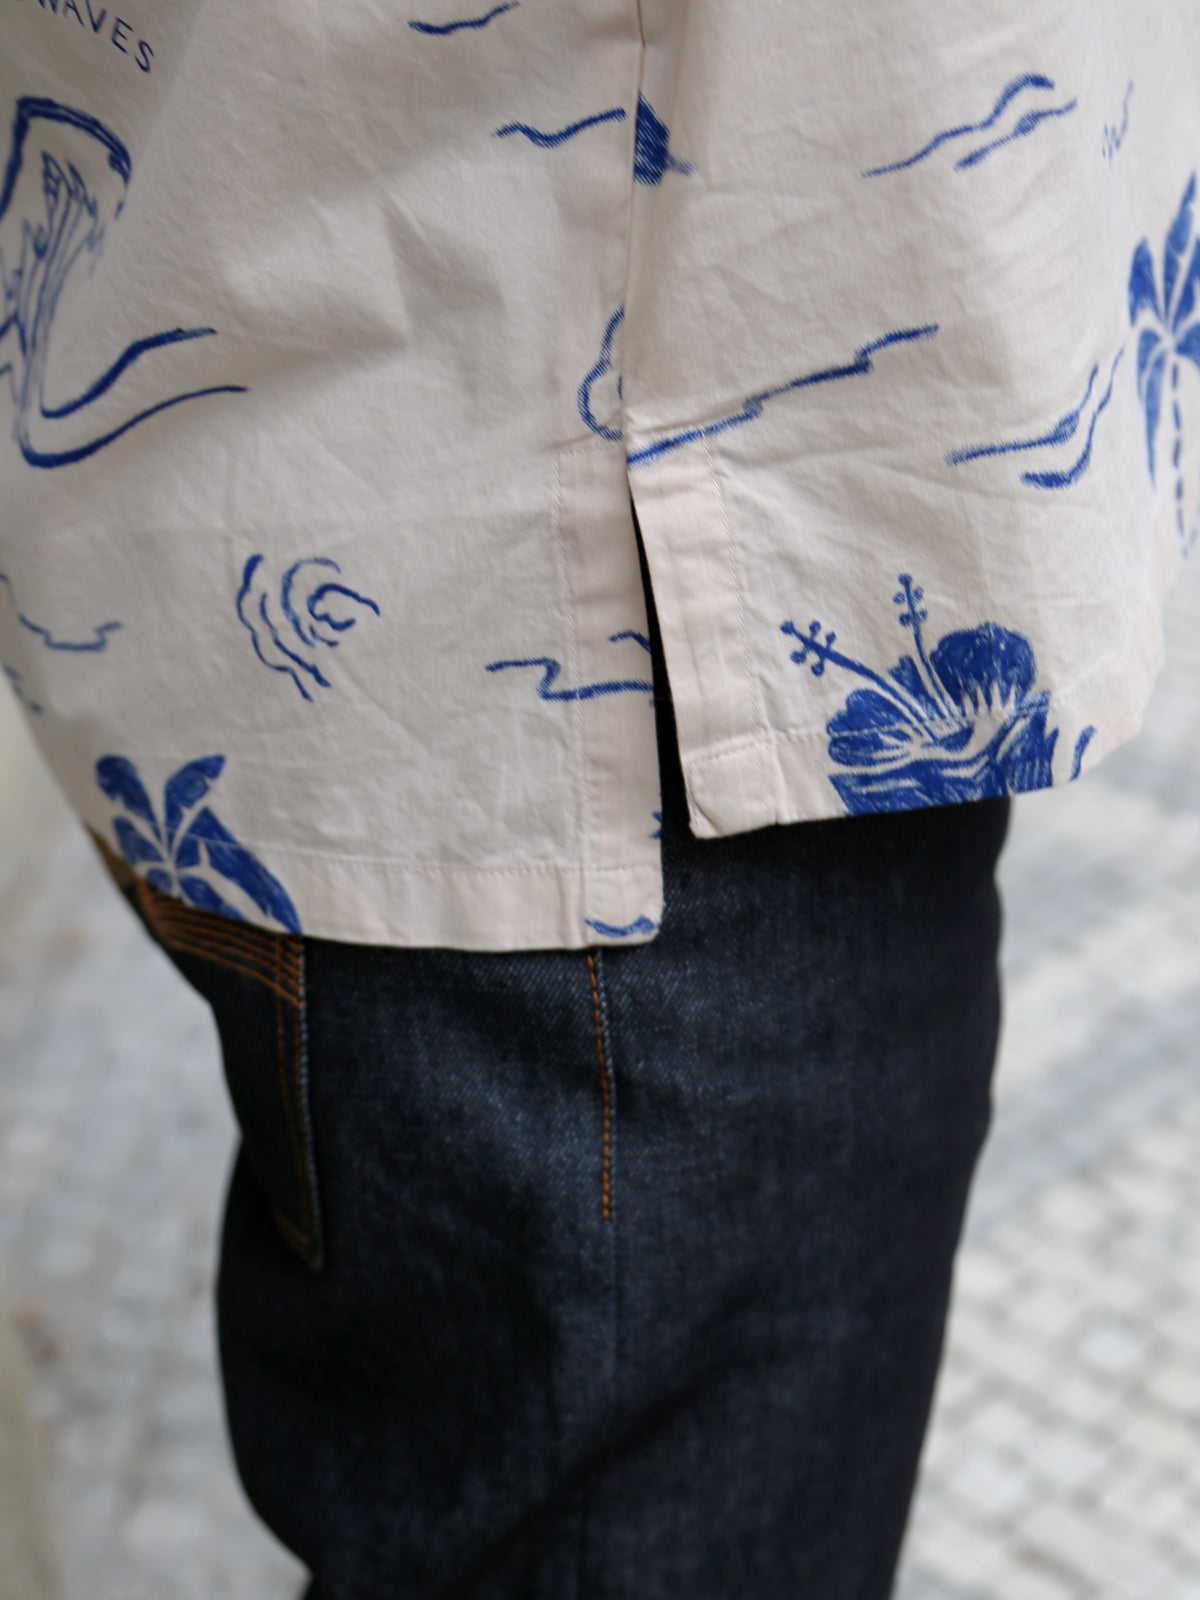 Nudie Jeans Arvid Waves Hawaii Shirt – Ecru (140836)